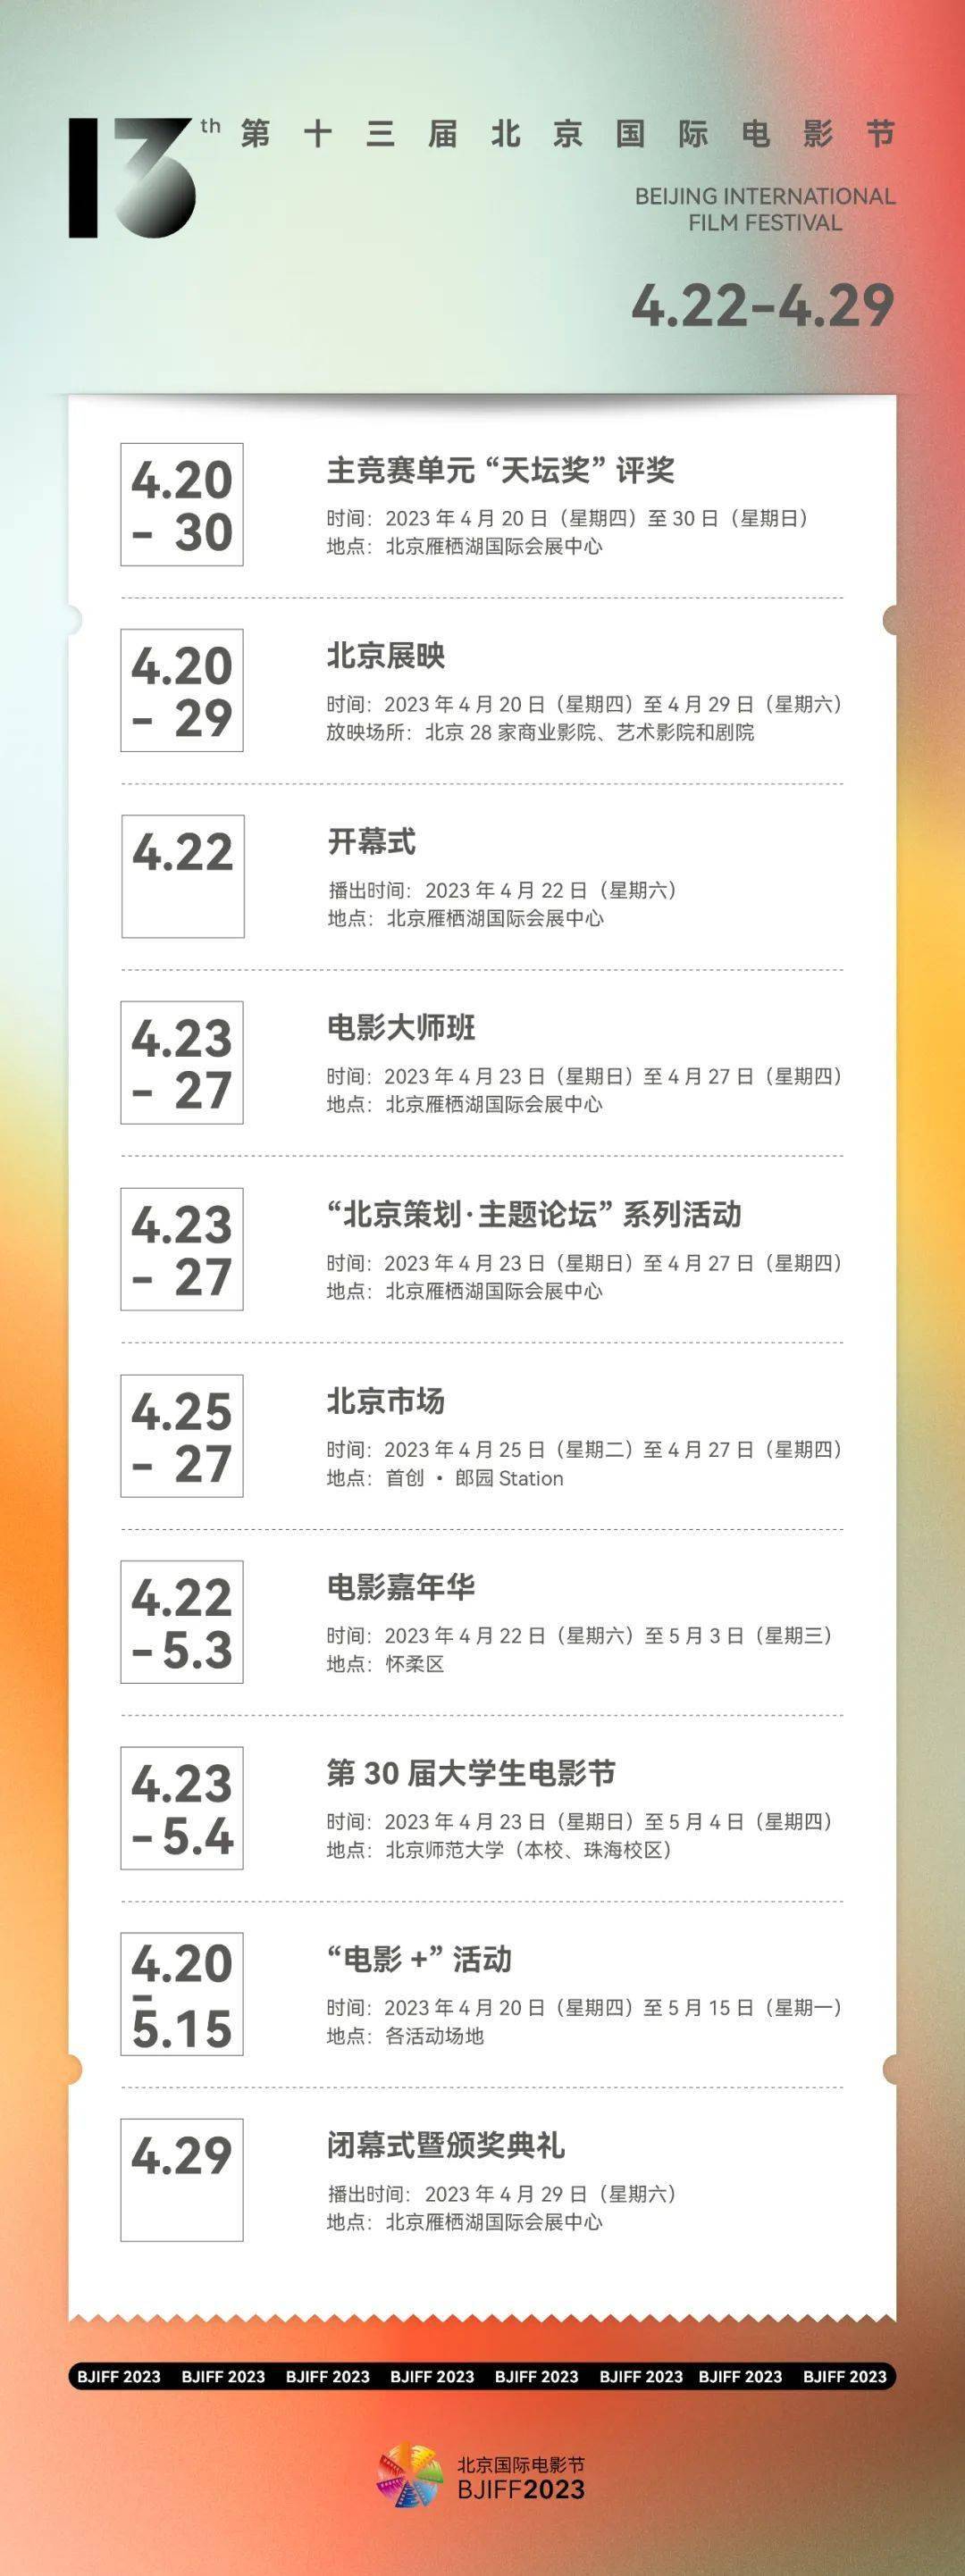 超级星鱼破解苹果版:资讯丨第十三届北京国际电影节4.22-4.29举行 周冬雨出演《长沙夜生活》